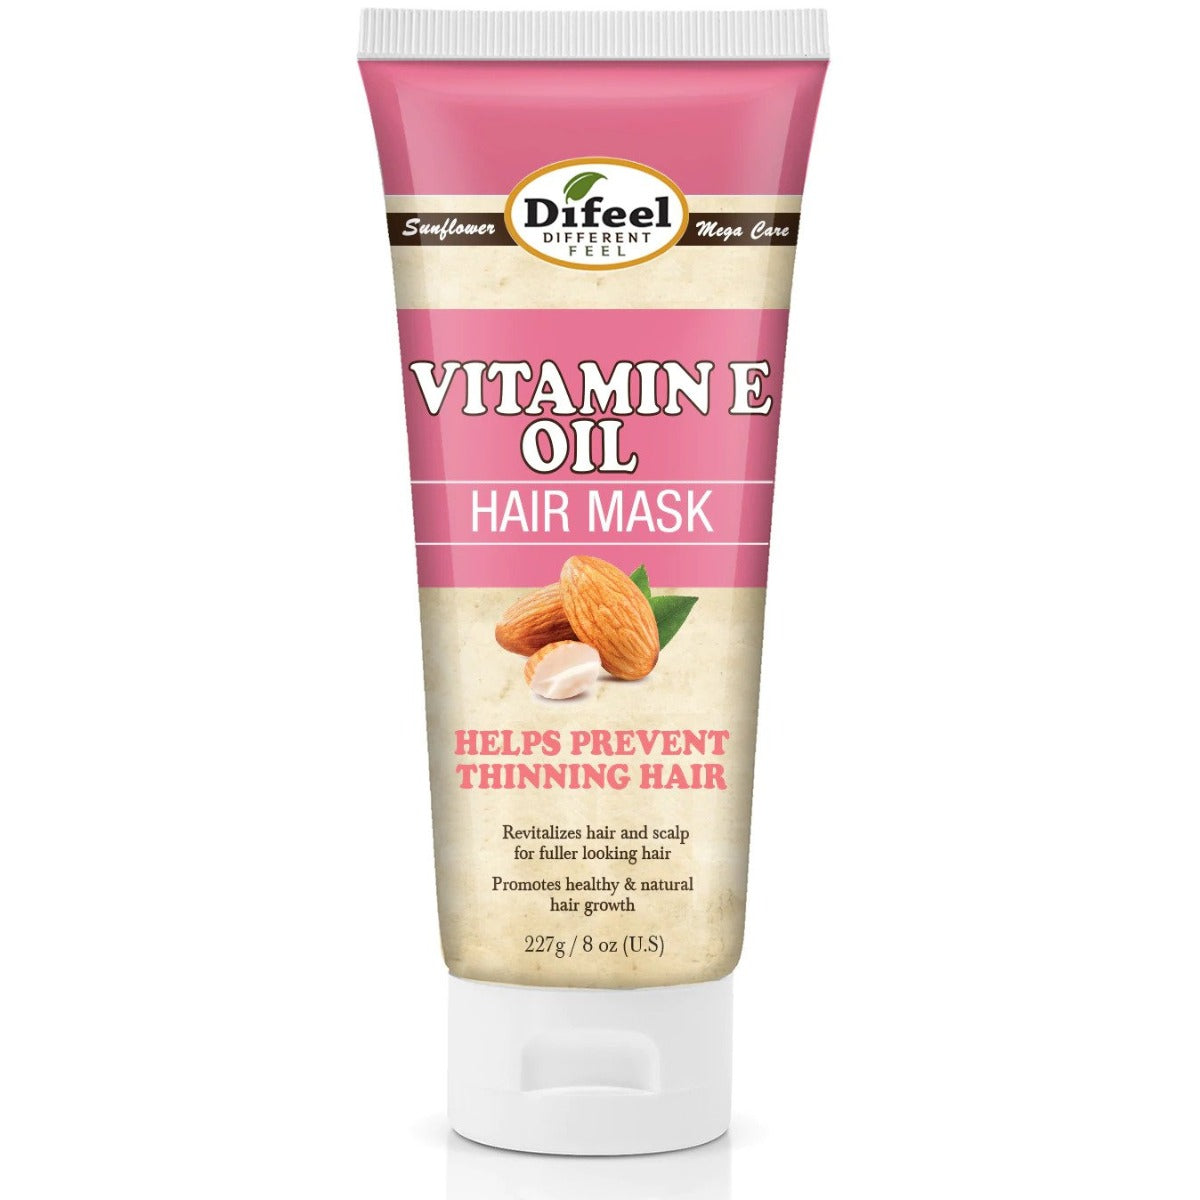 Difeel Vitamin E Oil Premium Hair Mask 236ml